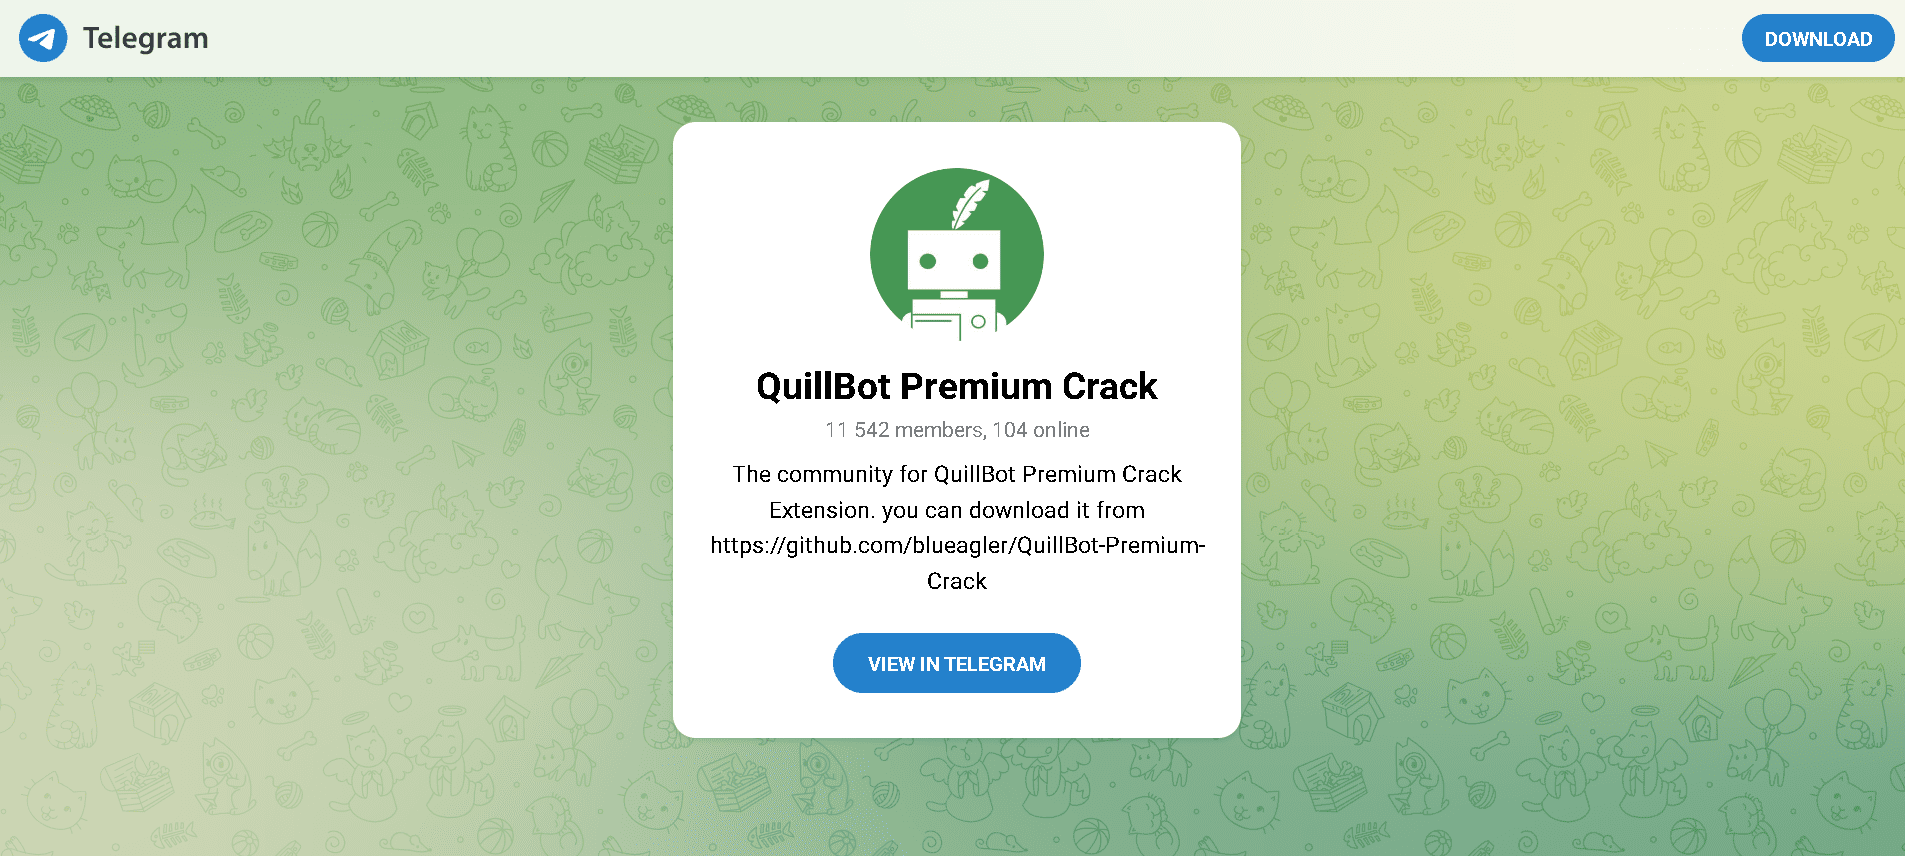 Quillbot Premium cracked Telegram group